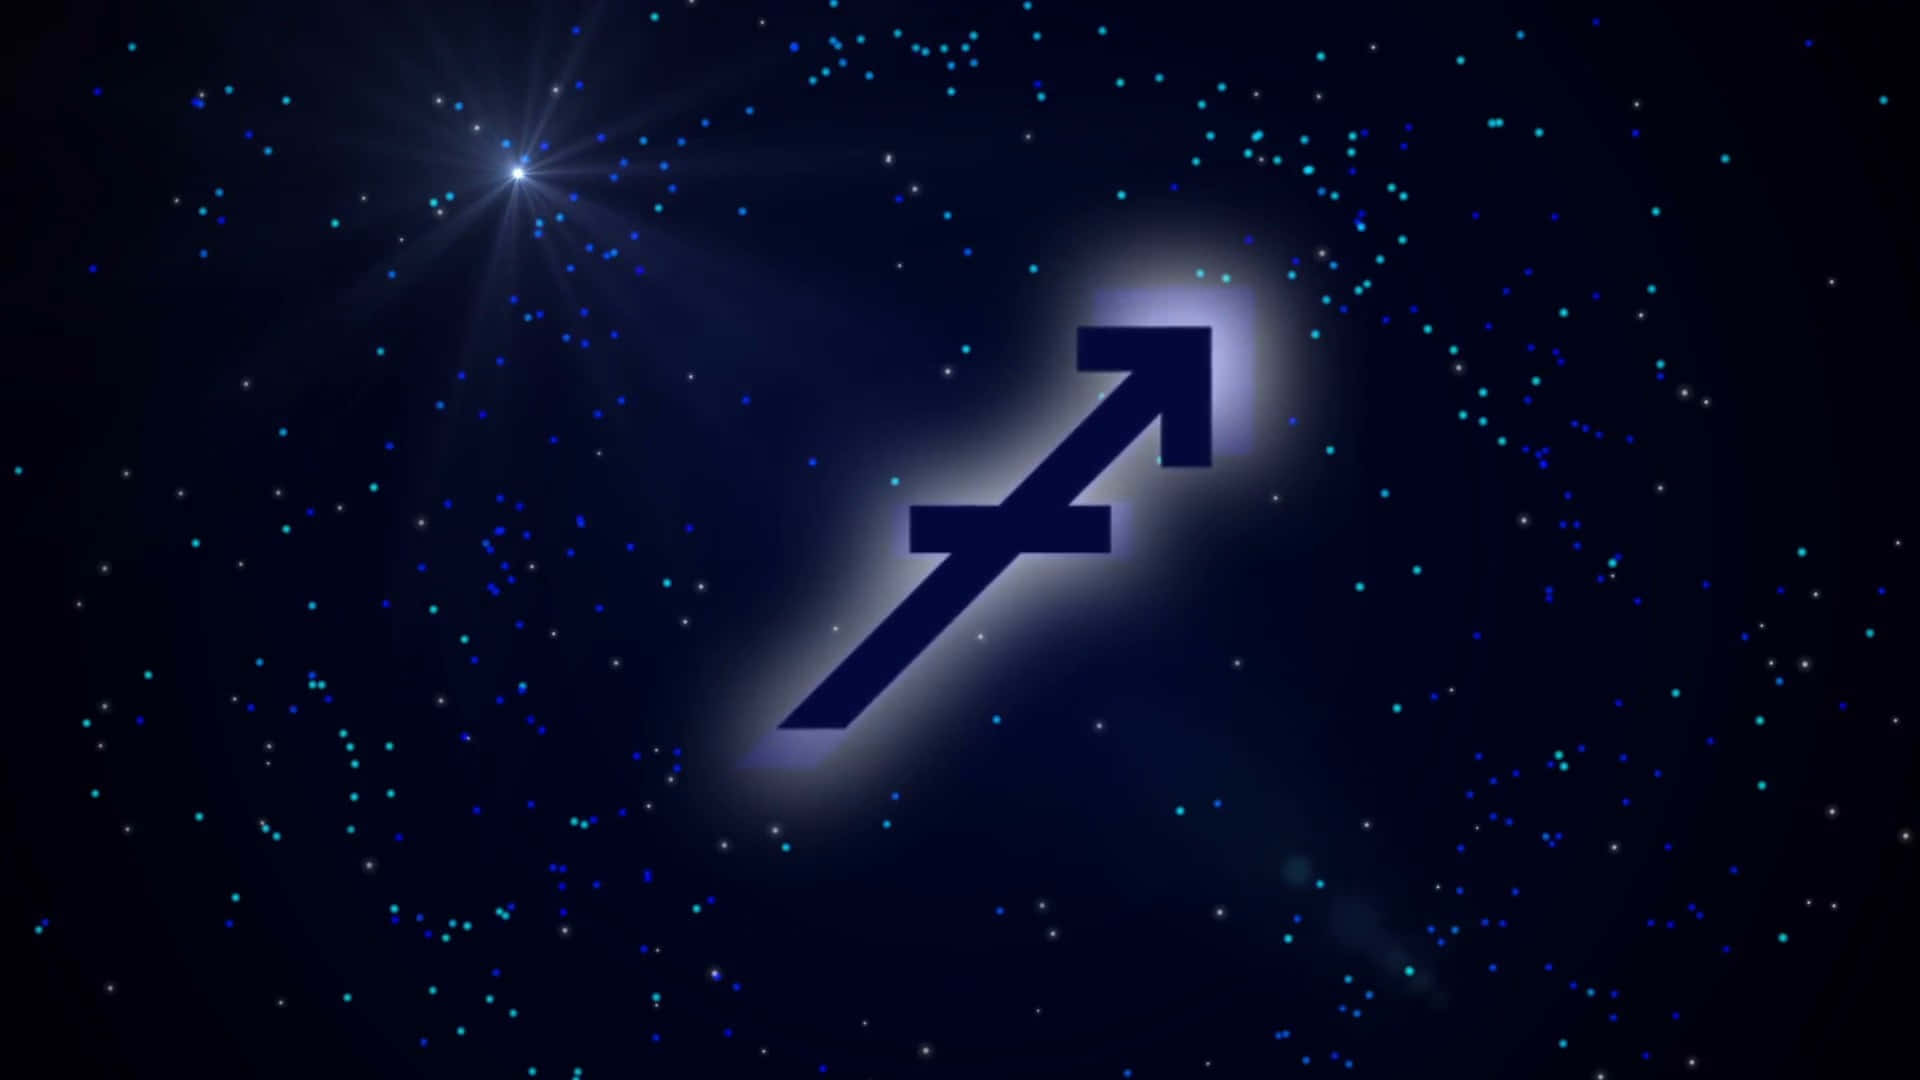 Magical Sagittarius Archer Against a Starry Sky